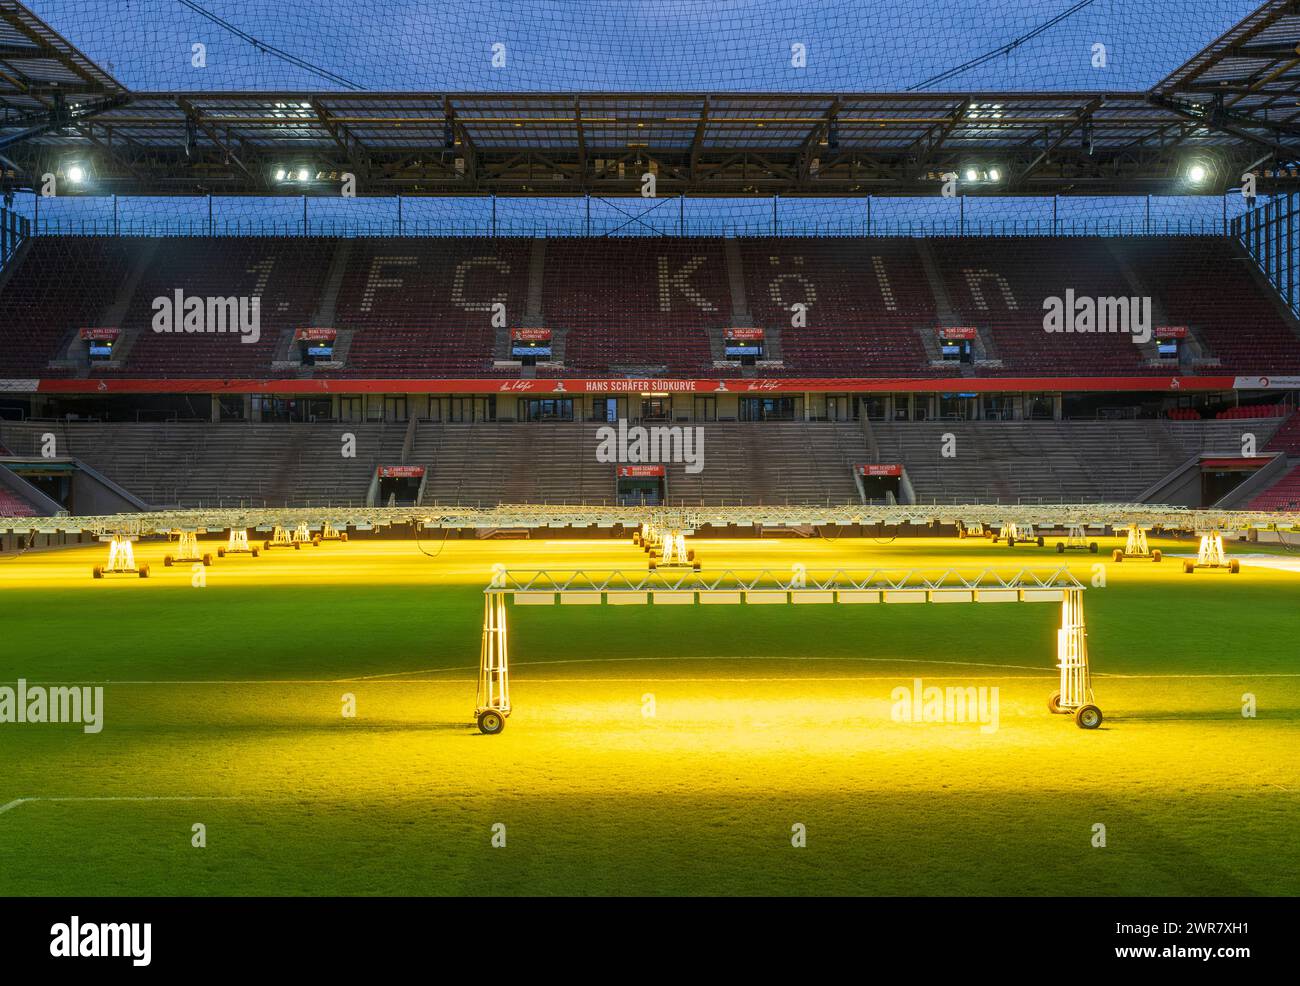 Le stade RheinEnergie est l'un des stades des Championnats d'Europe de football 2024. Le terrain du stade est maintenu avec un éclairage artificiel Banque D'Images